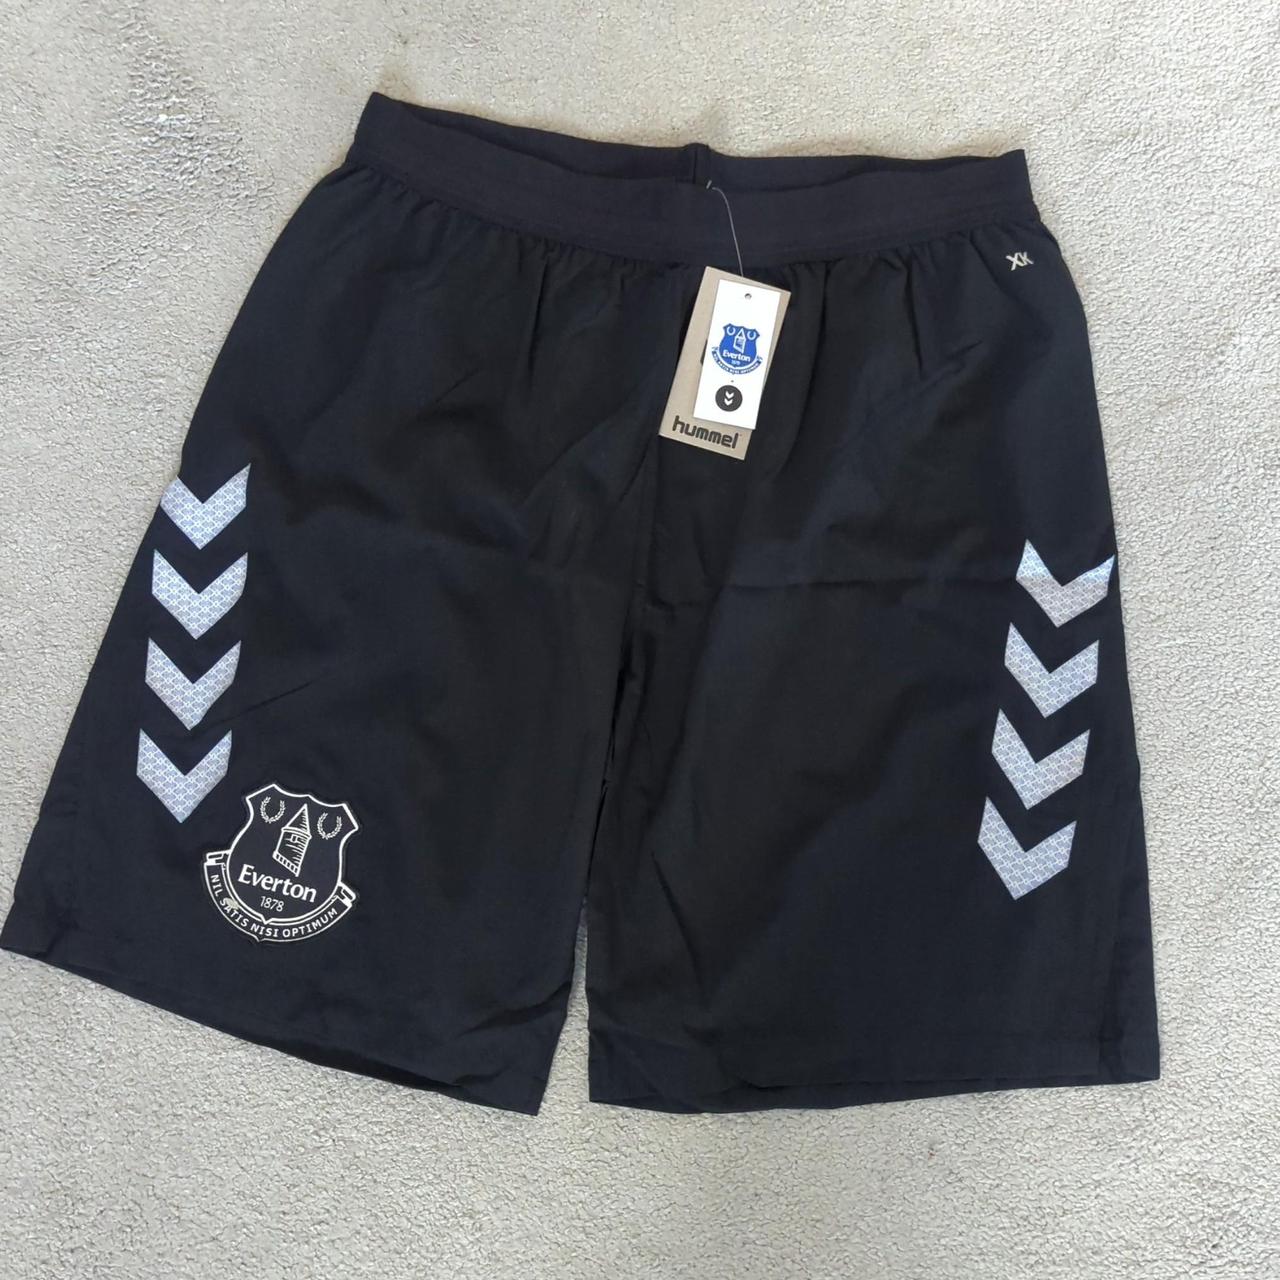 Everton football training shorts Hummel Black Brand... - Depop